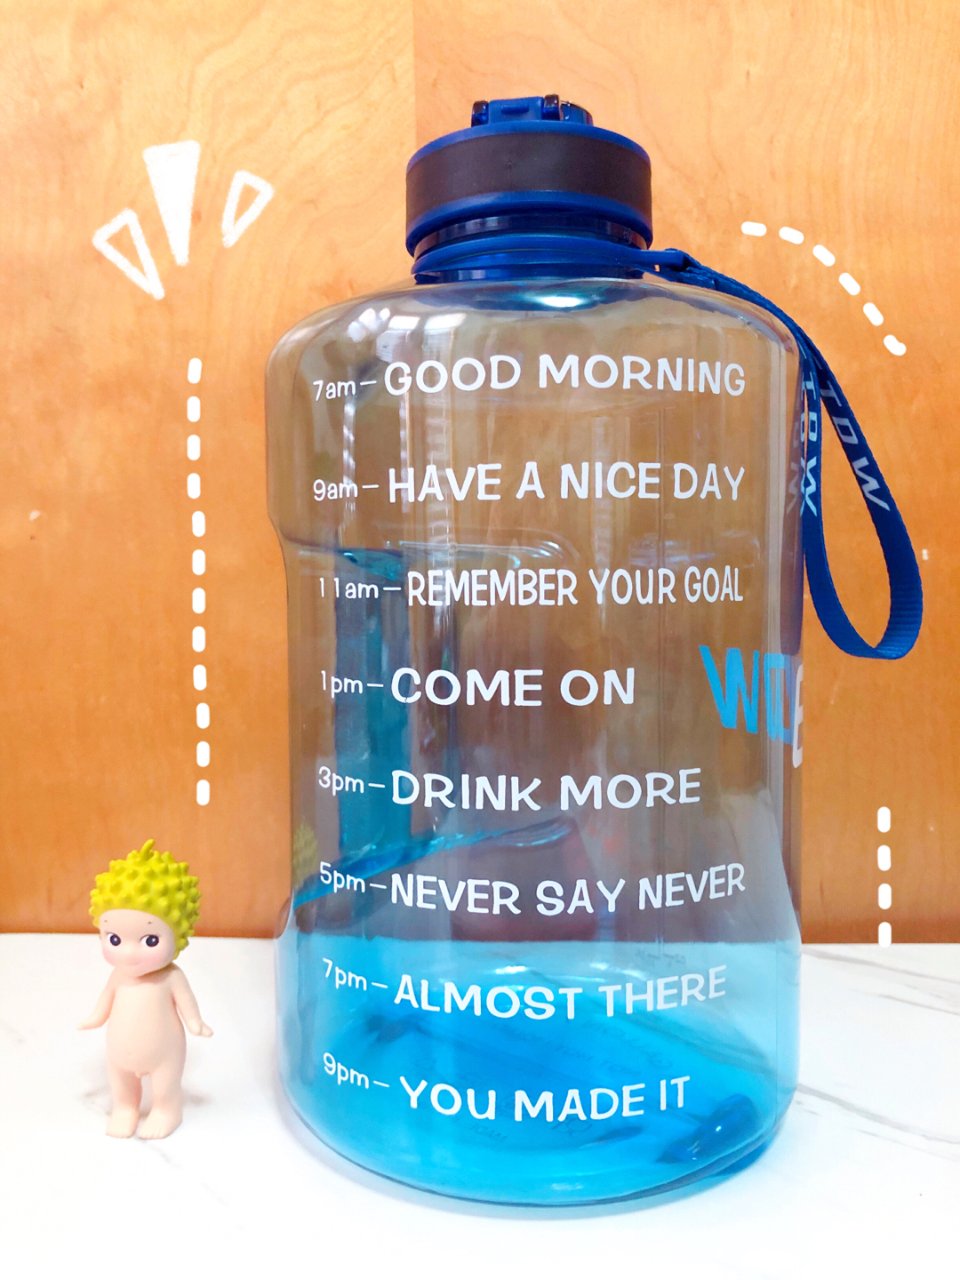 ETDW┊超巨型健身水瓶🍼我的水瓶酷吗😏...